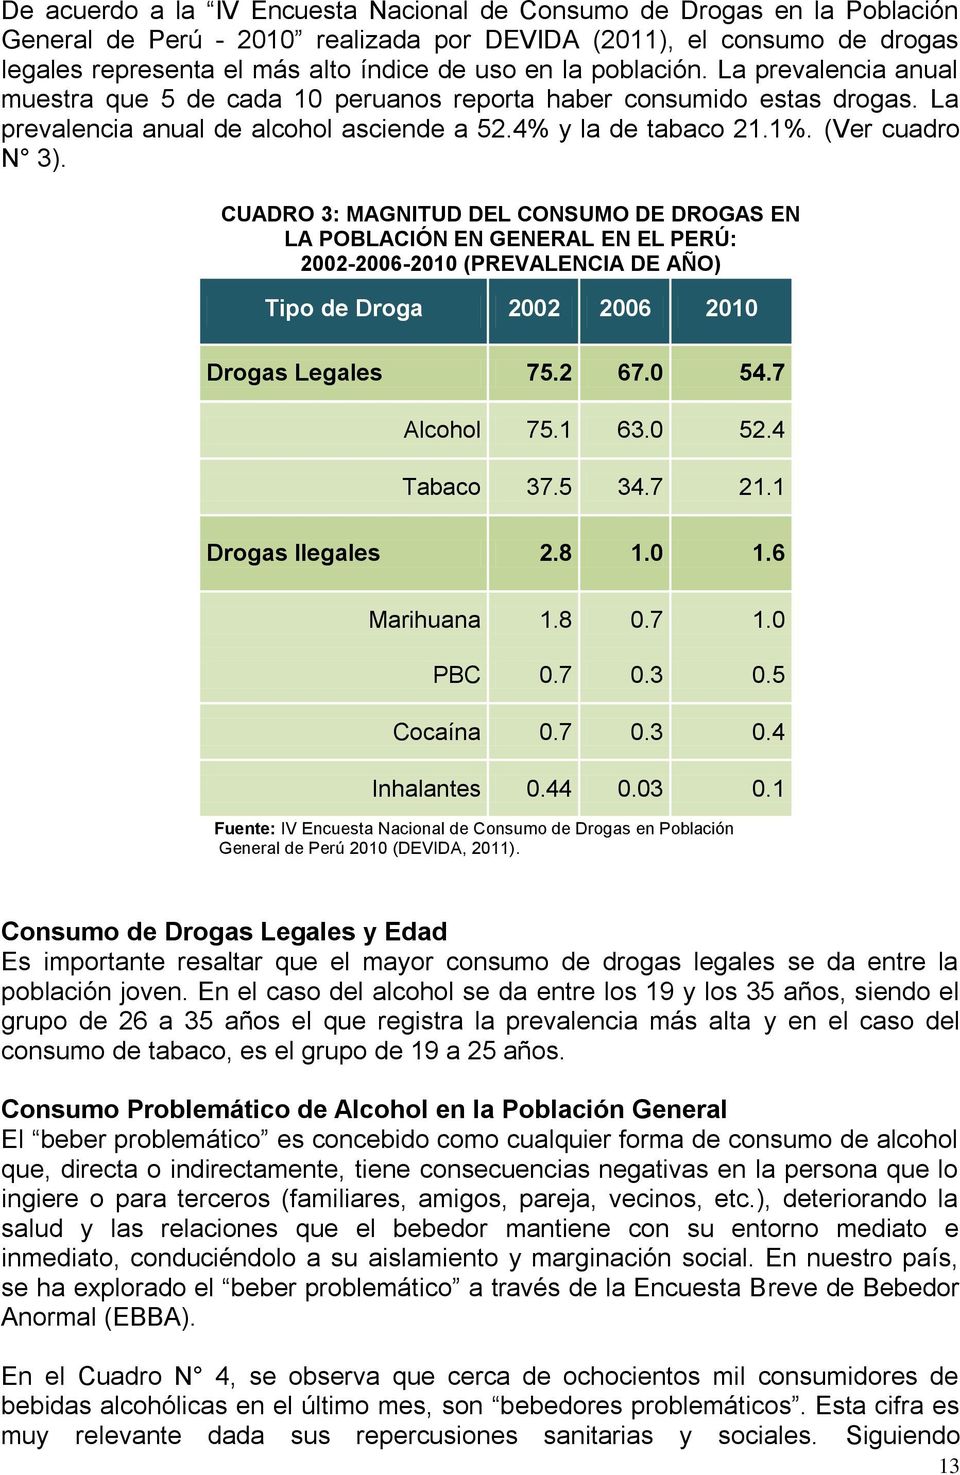 CUADRO 3: MAGNITUD DEL CONSUMO DE DROGAS EN LA POBLACIÓN EN GENERAL EN EL PERÚ: 2002-2006-2010 (PREVALENCIA DE AÑO) Tipo de Droga 2002 2006 2010 Drogas Legales 75.2 67.0 54.7 Alcohol 75.1 63.0 52.